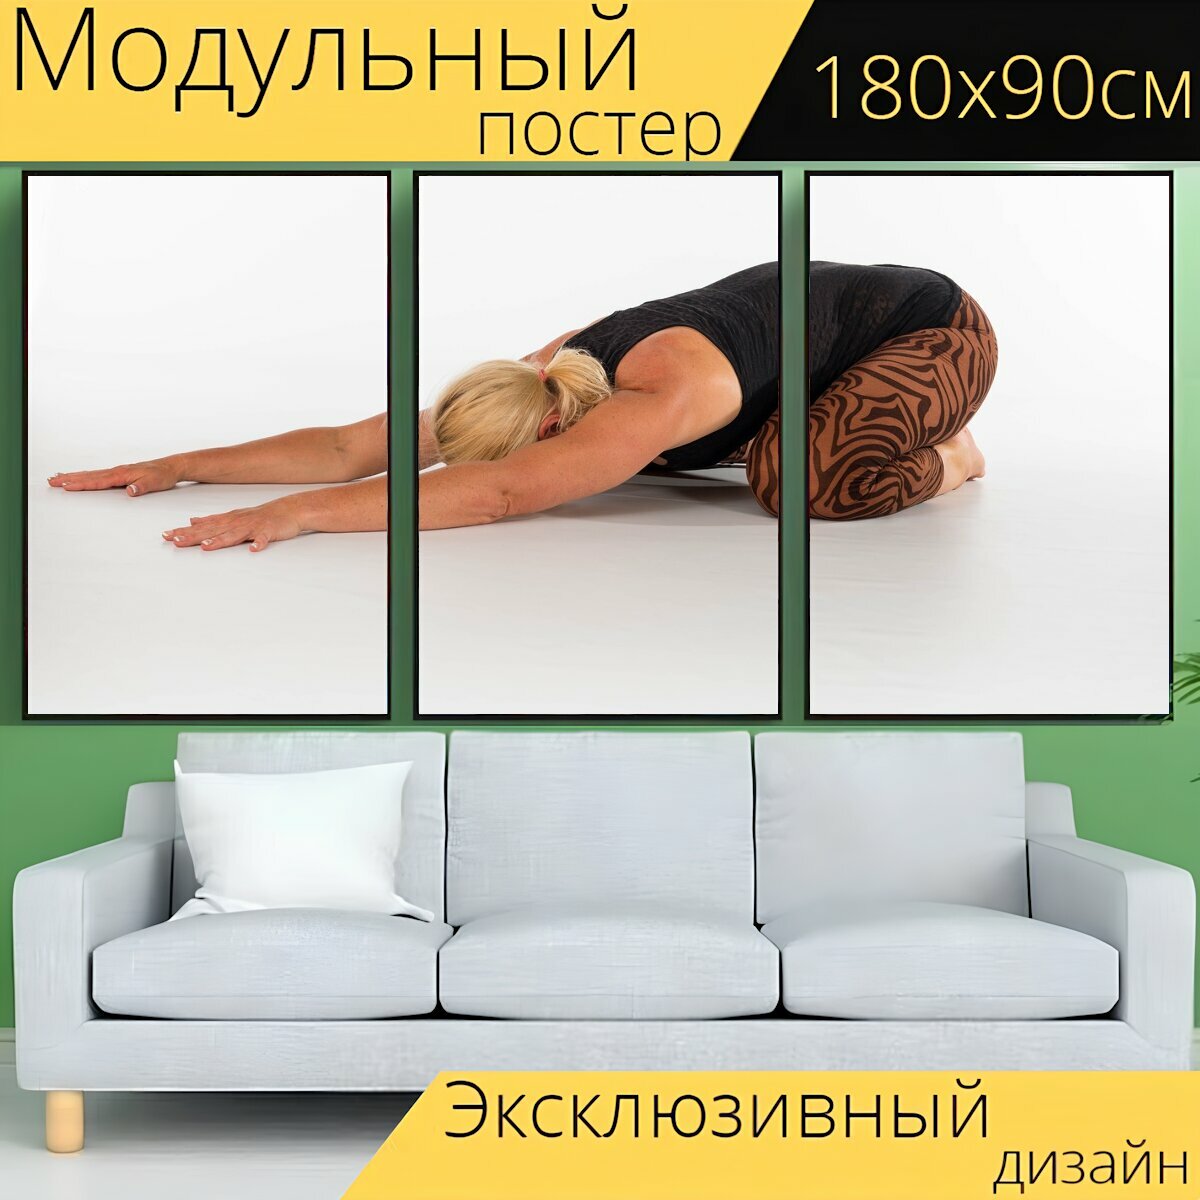 Модульный постер "Йога, фитнес, женщина" 180 x 90 см. для интерьера